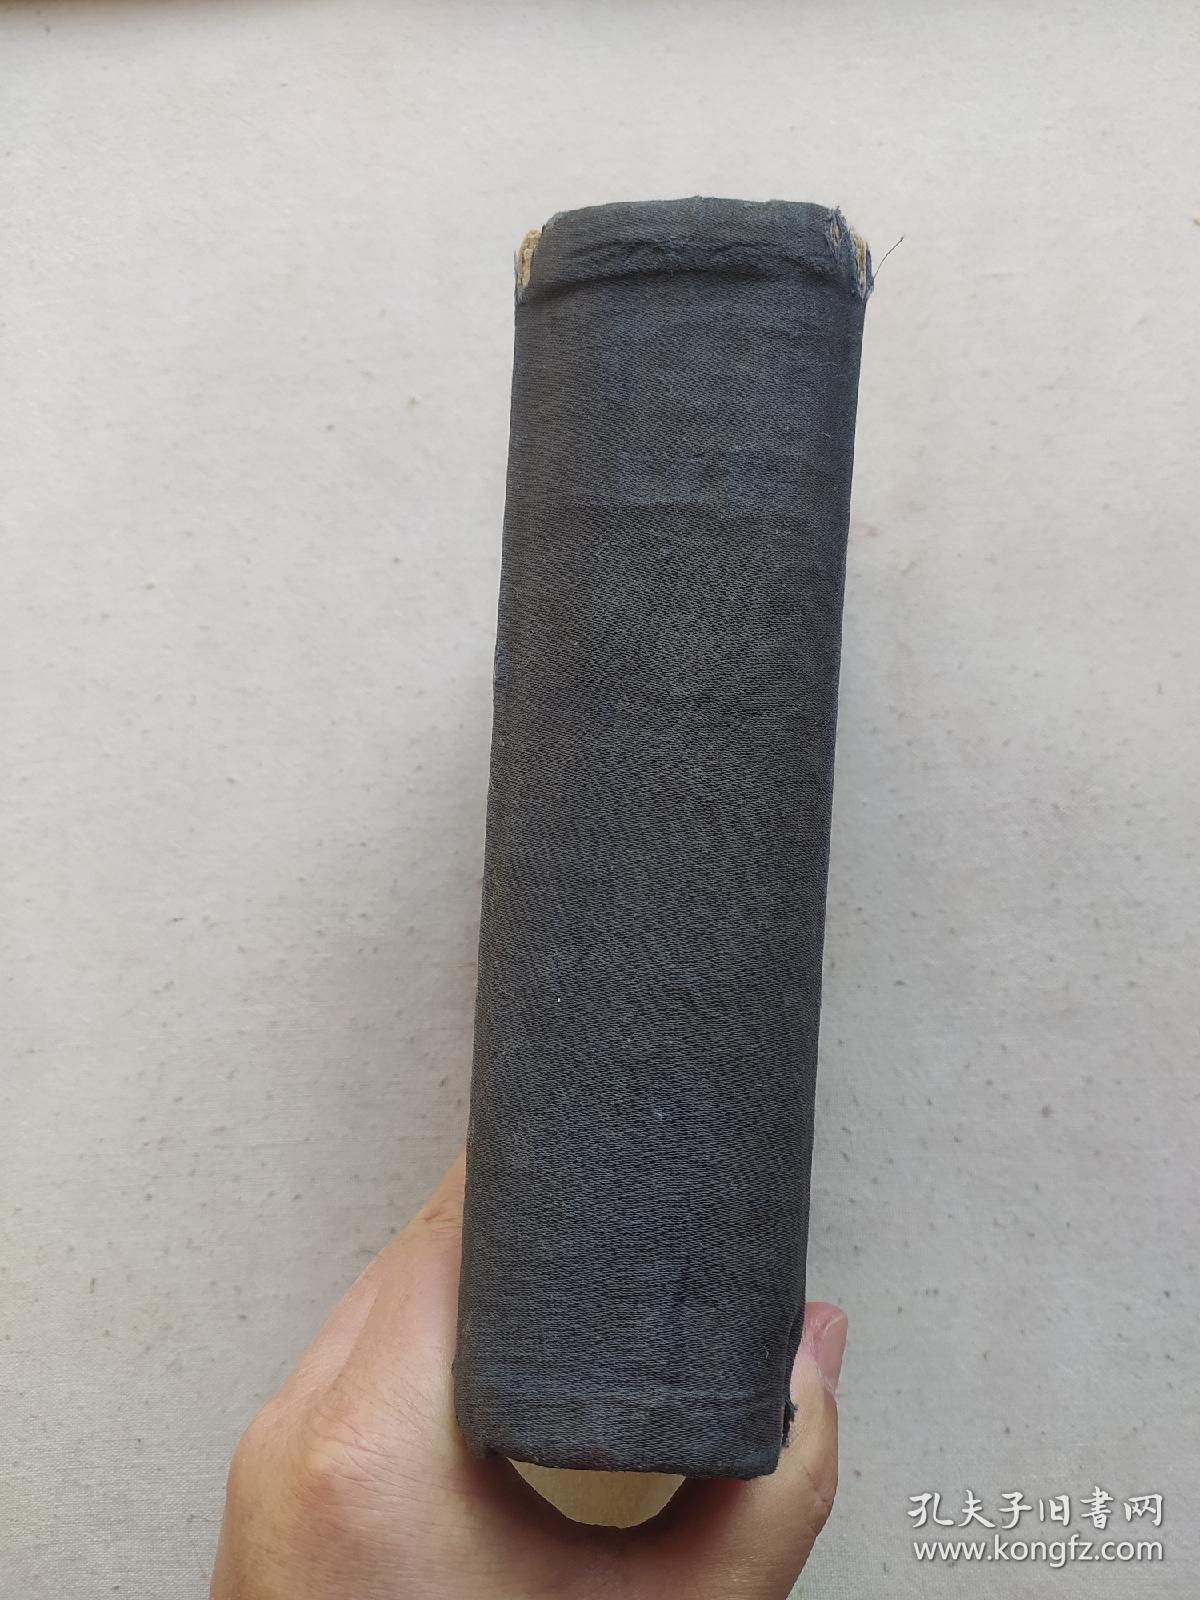 48年东北书店出版 《毛泽东选集》。高22厘米，宽15厘米.。